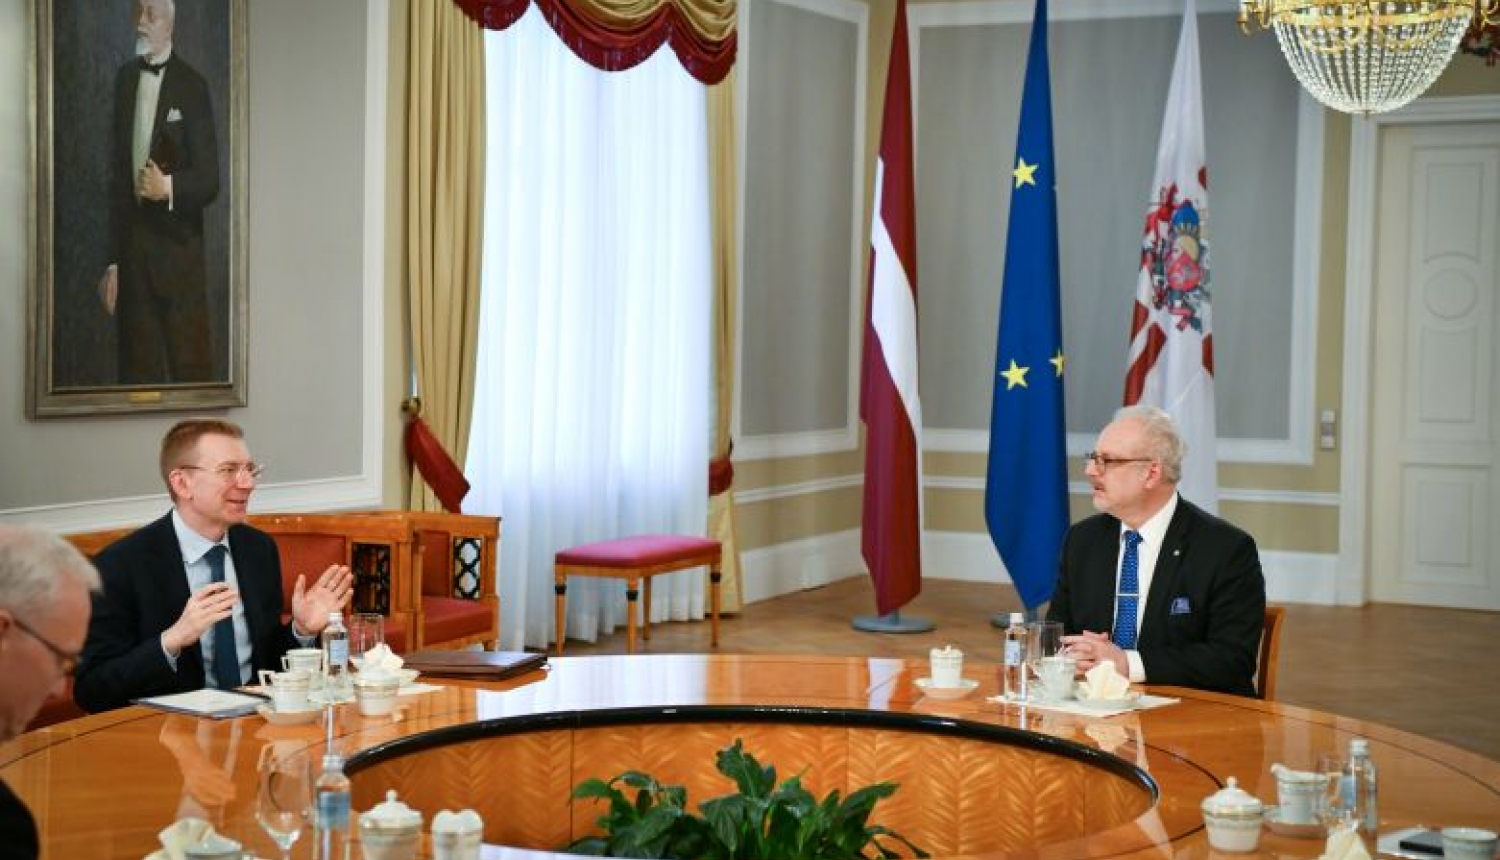 Valsts prezidents: ar Polijas prezidentu runāju par preču kustības mobilitāti caur Poliju uz Latviju